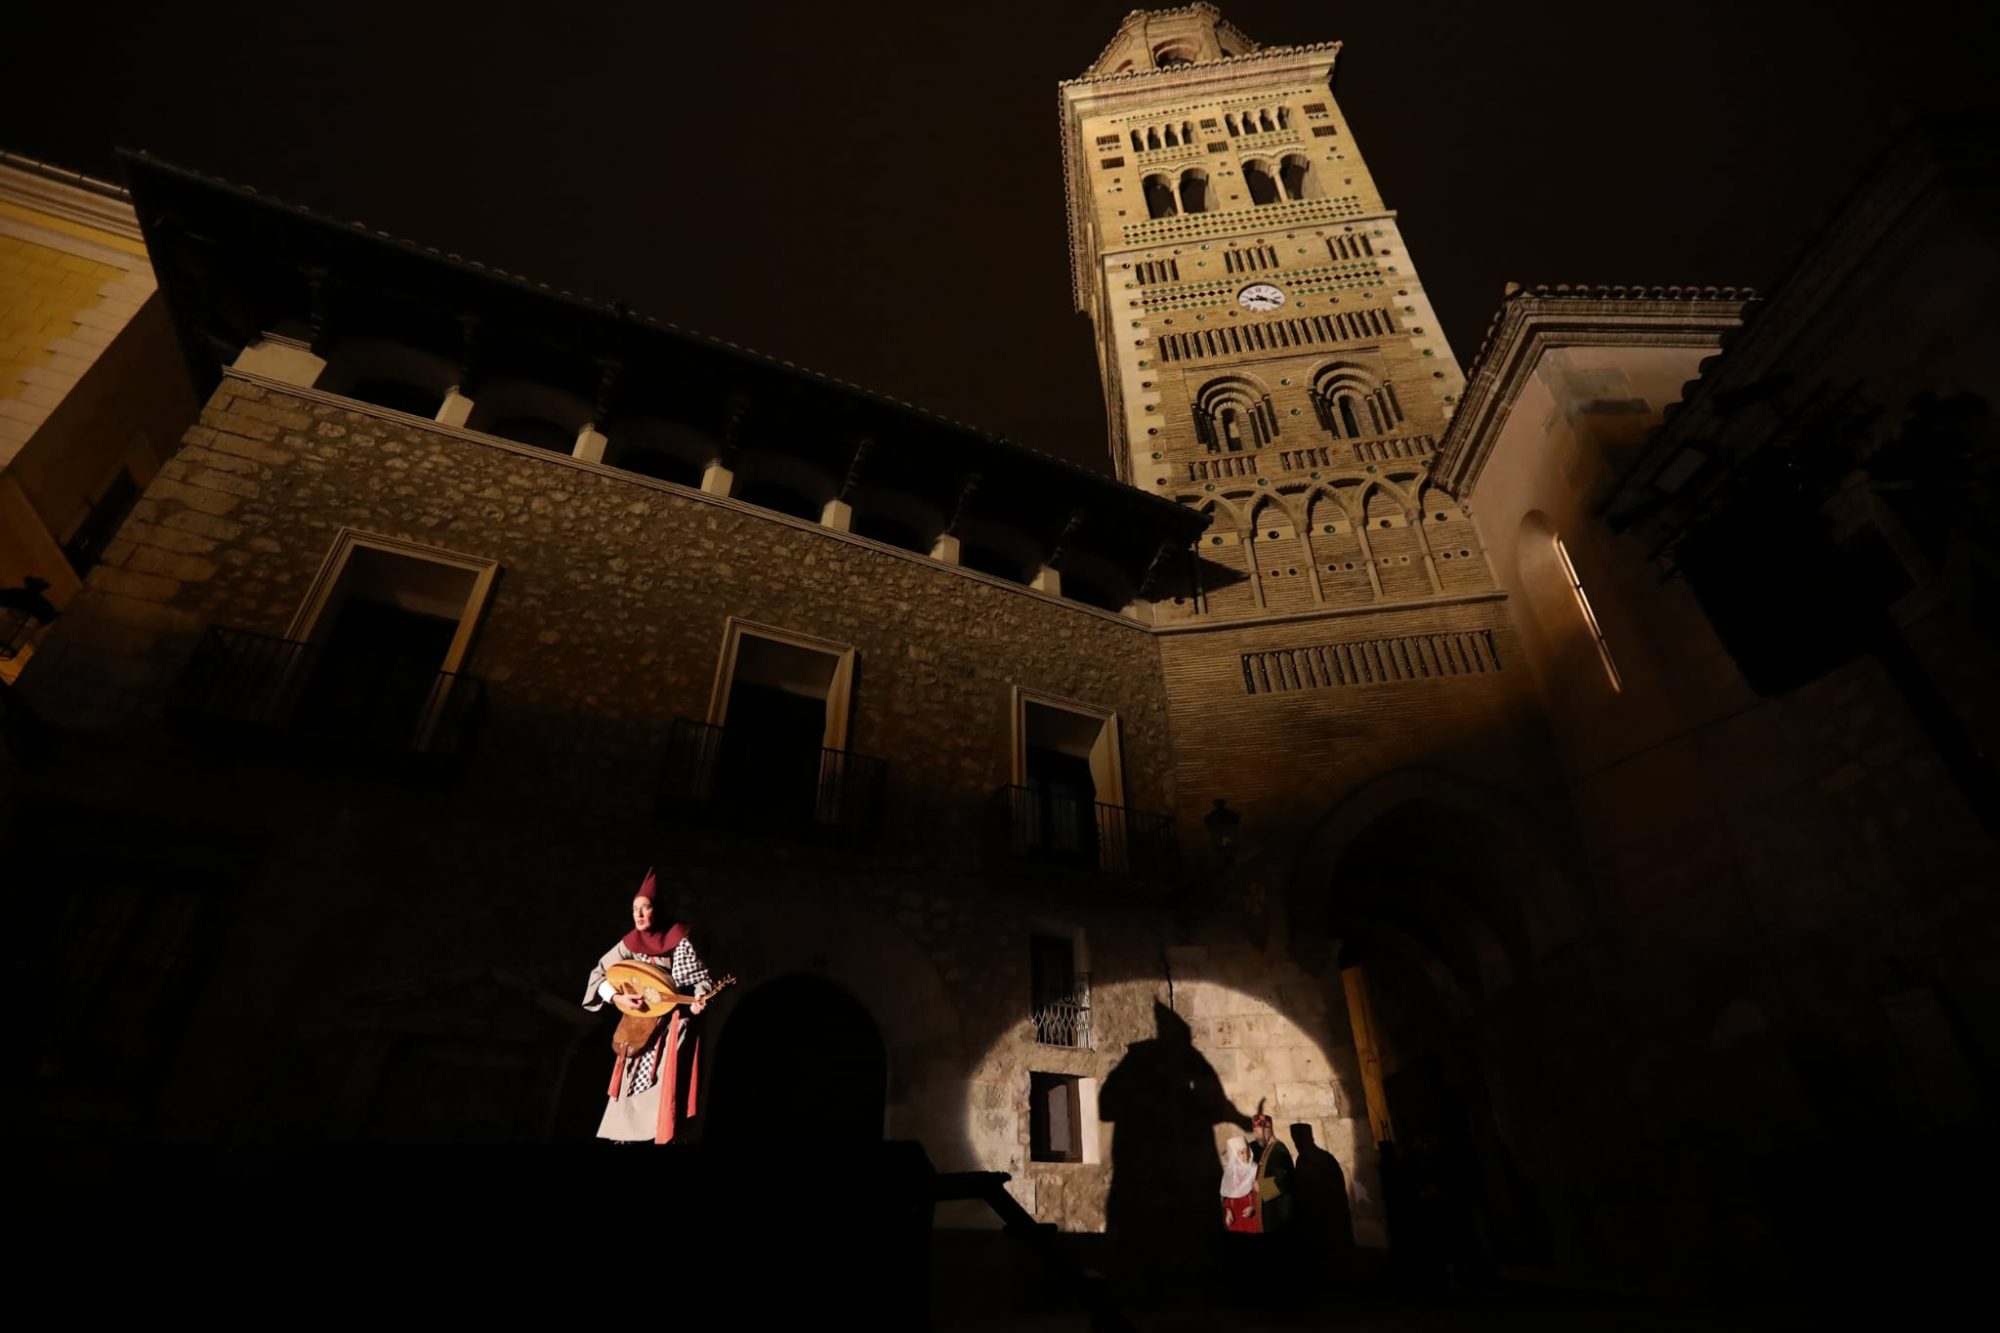 La trágica historia de los Amantes de Teruel se convierte en alegre fiesta popular